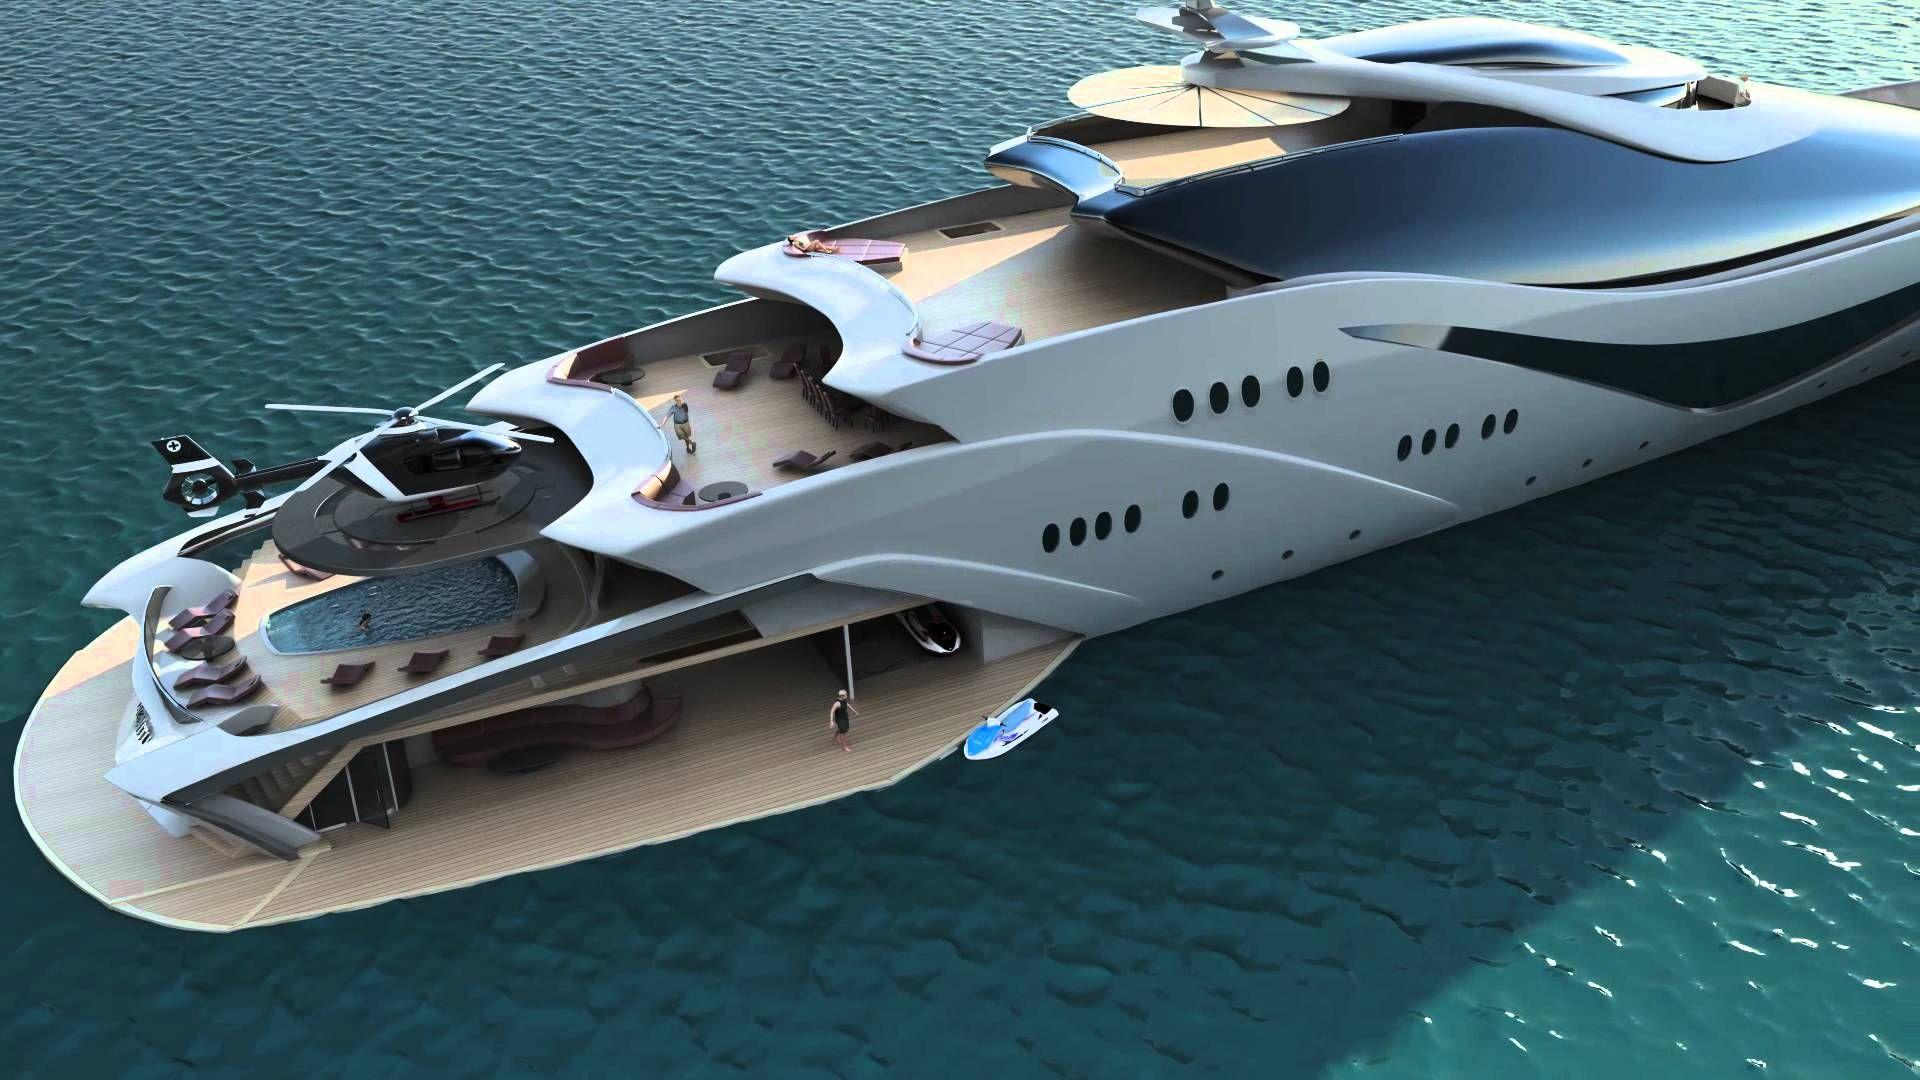 Top 10 Craziest Future Boat Designs